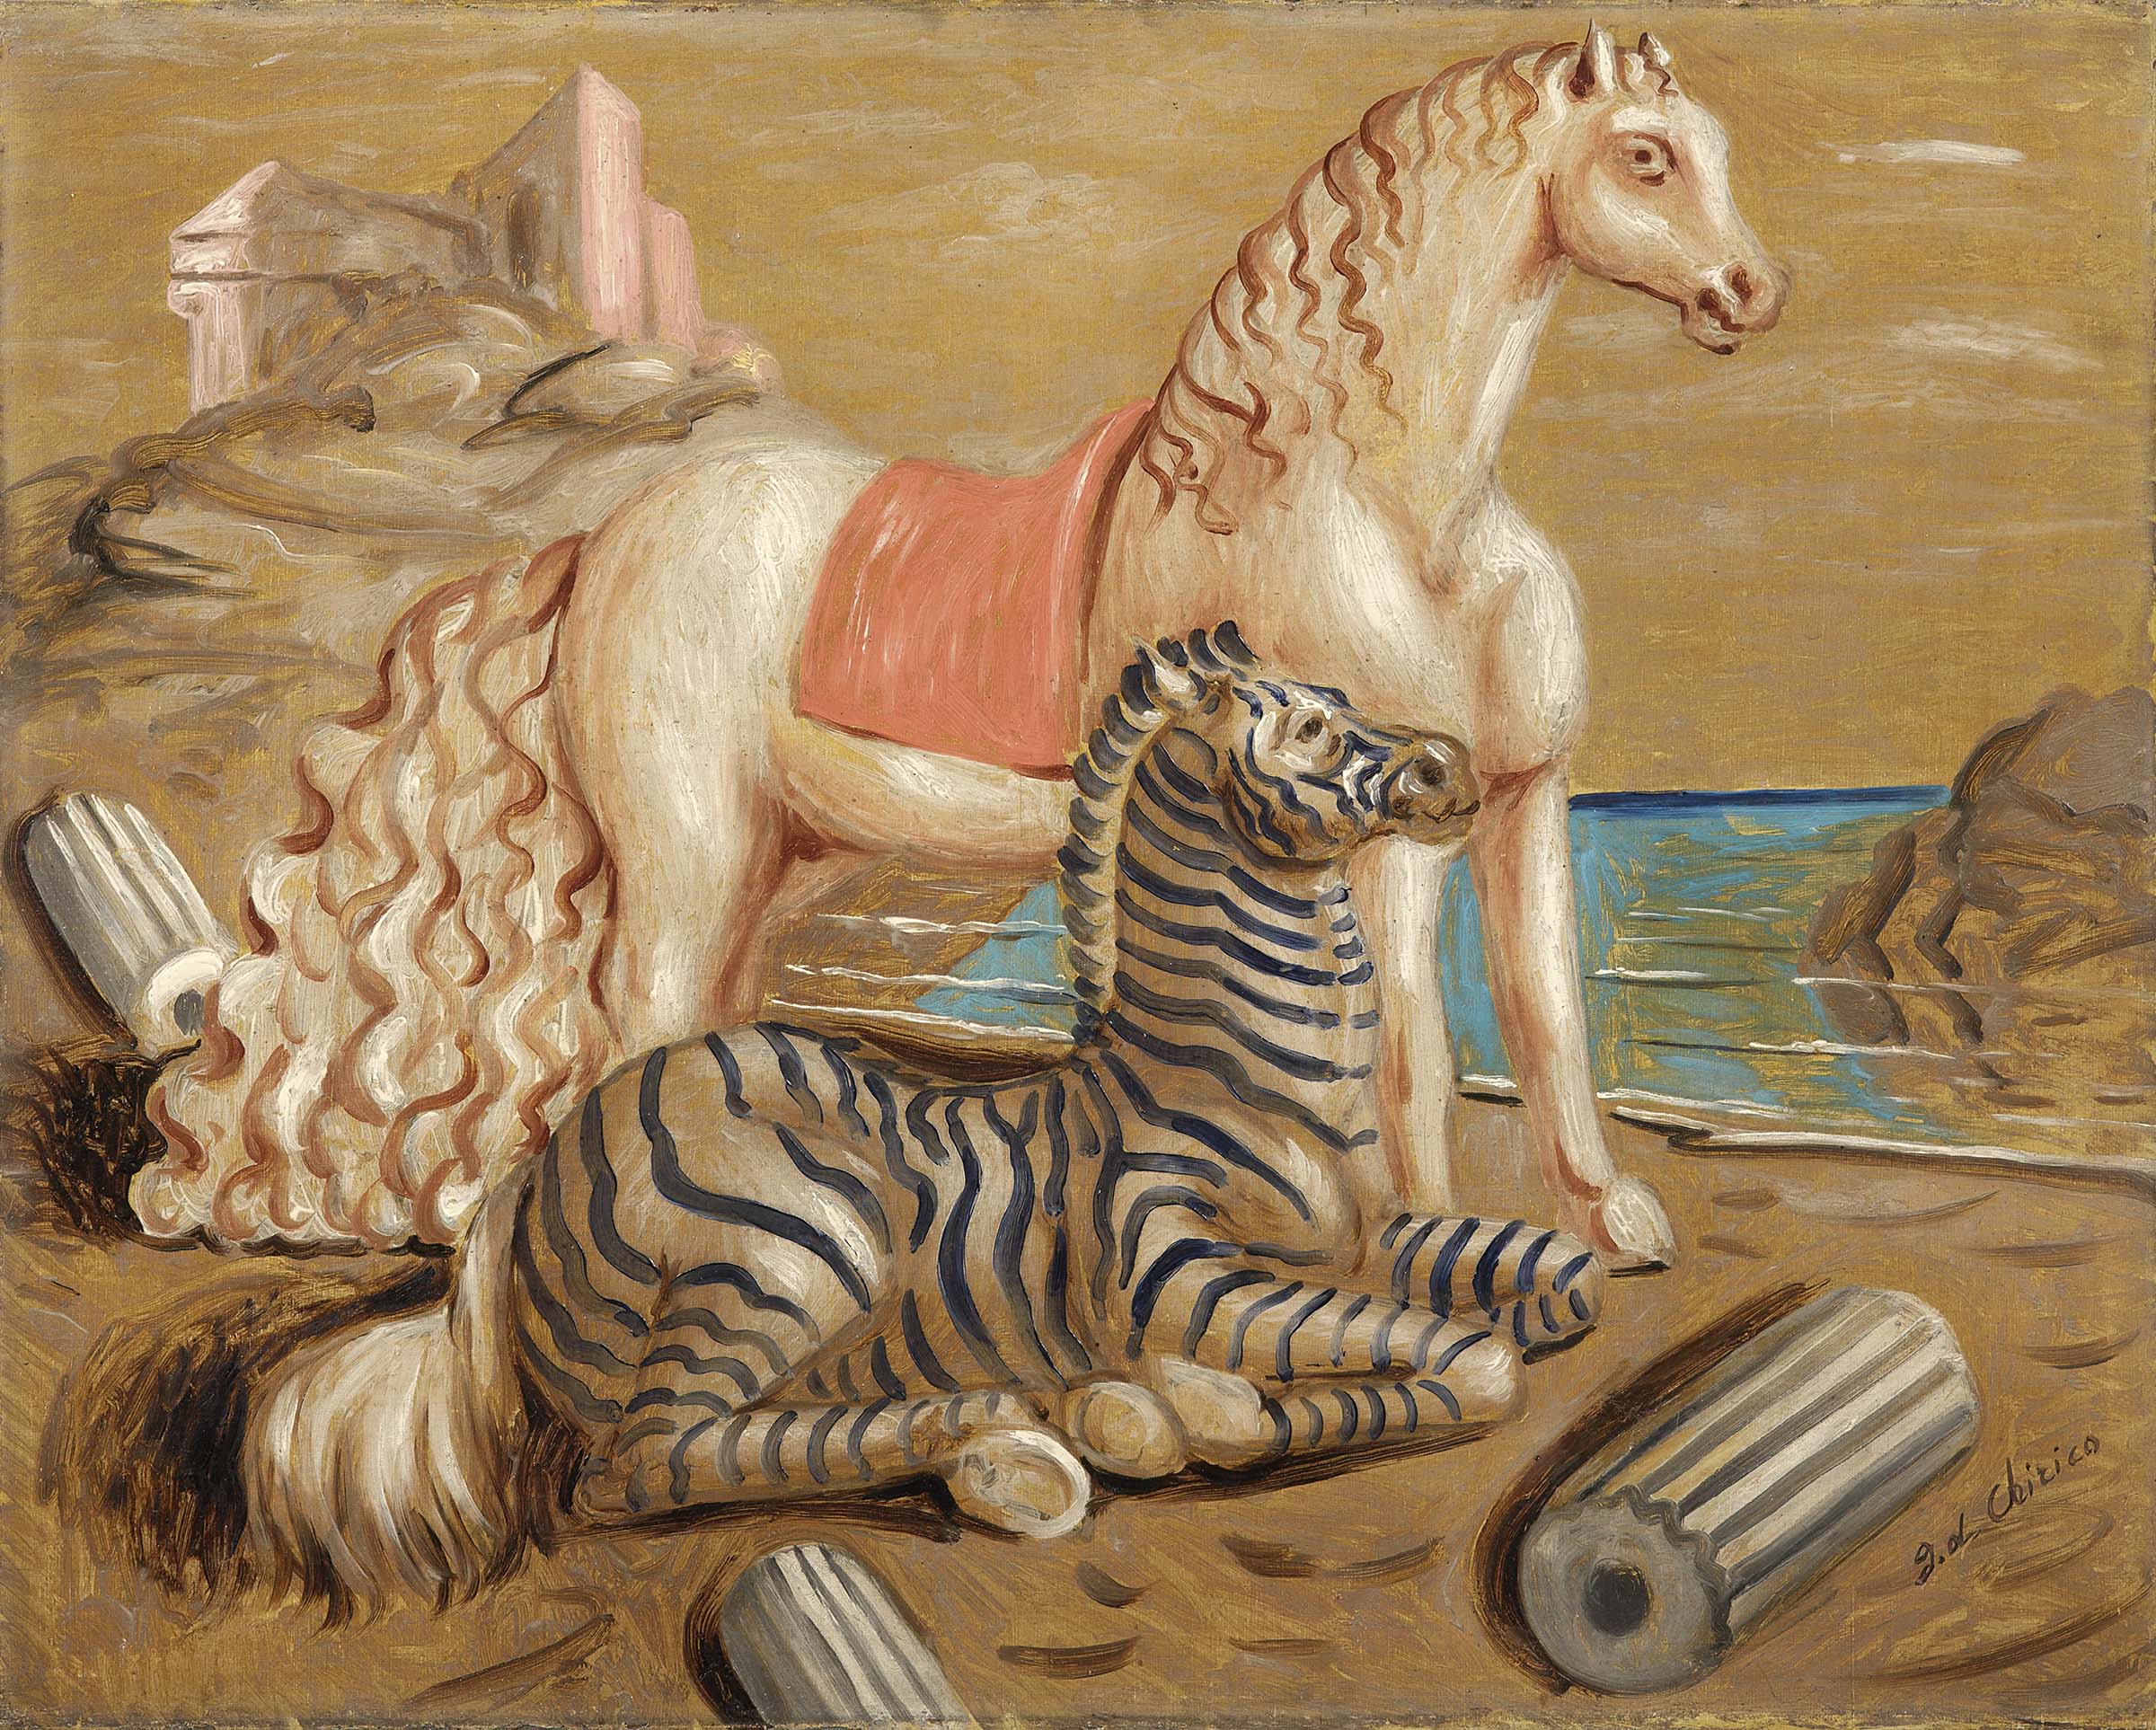 LOTTO 651 - Giorgio De Chirico, Cavallo e Zebra in riva al mare, 1930 ca. Olio su tela, cm. 73,5x91,7. STIMA € 350.000 / 450.000